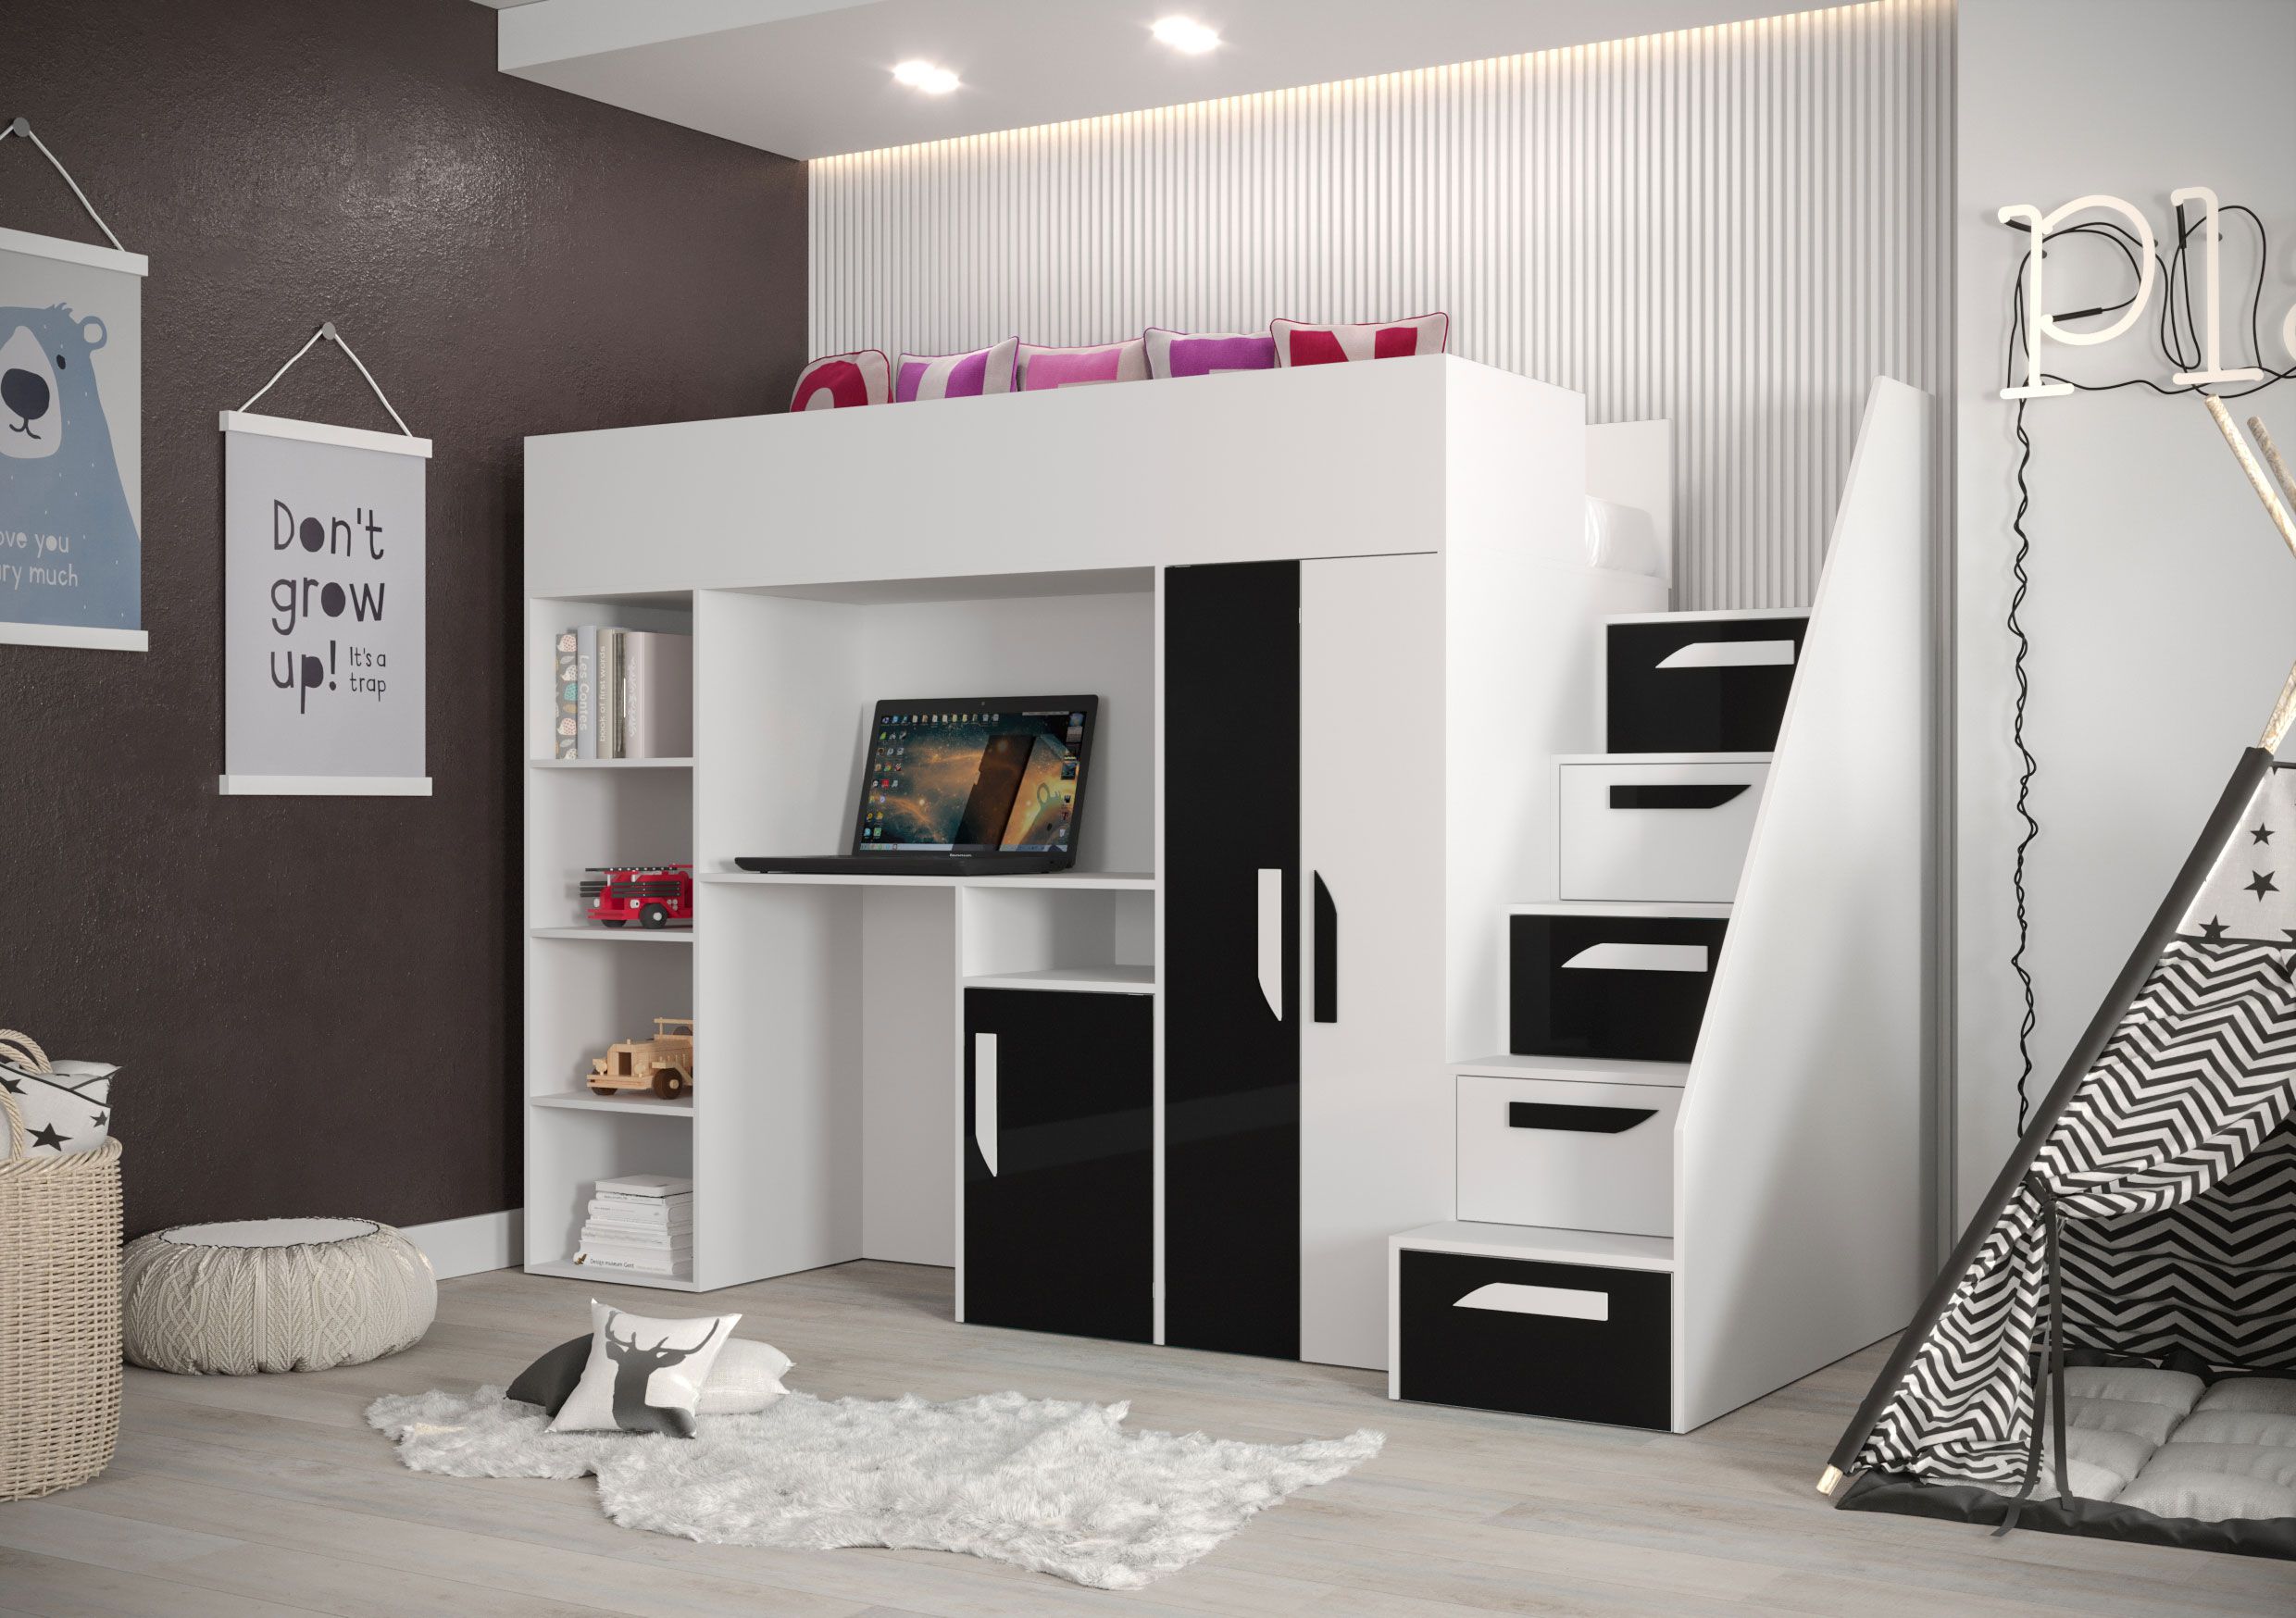 Lit fonctionnel / lit d'enfant / lit surélevé combiné avec espace de rangement et bureau Jura 18, Couleur : blanc / noir - Dimensions : 165 x 247 x 120 cm (H x L x P)